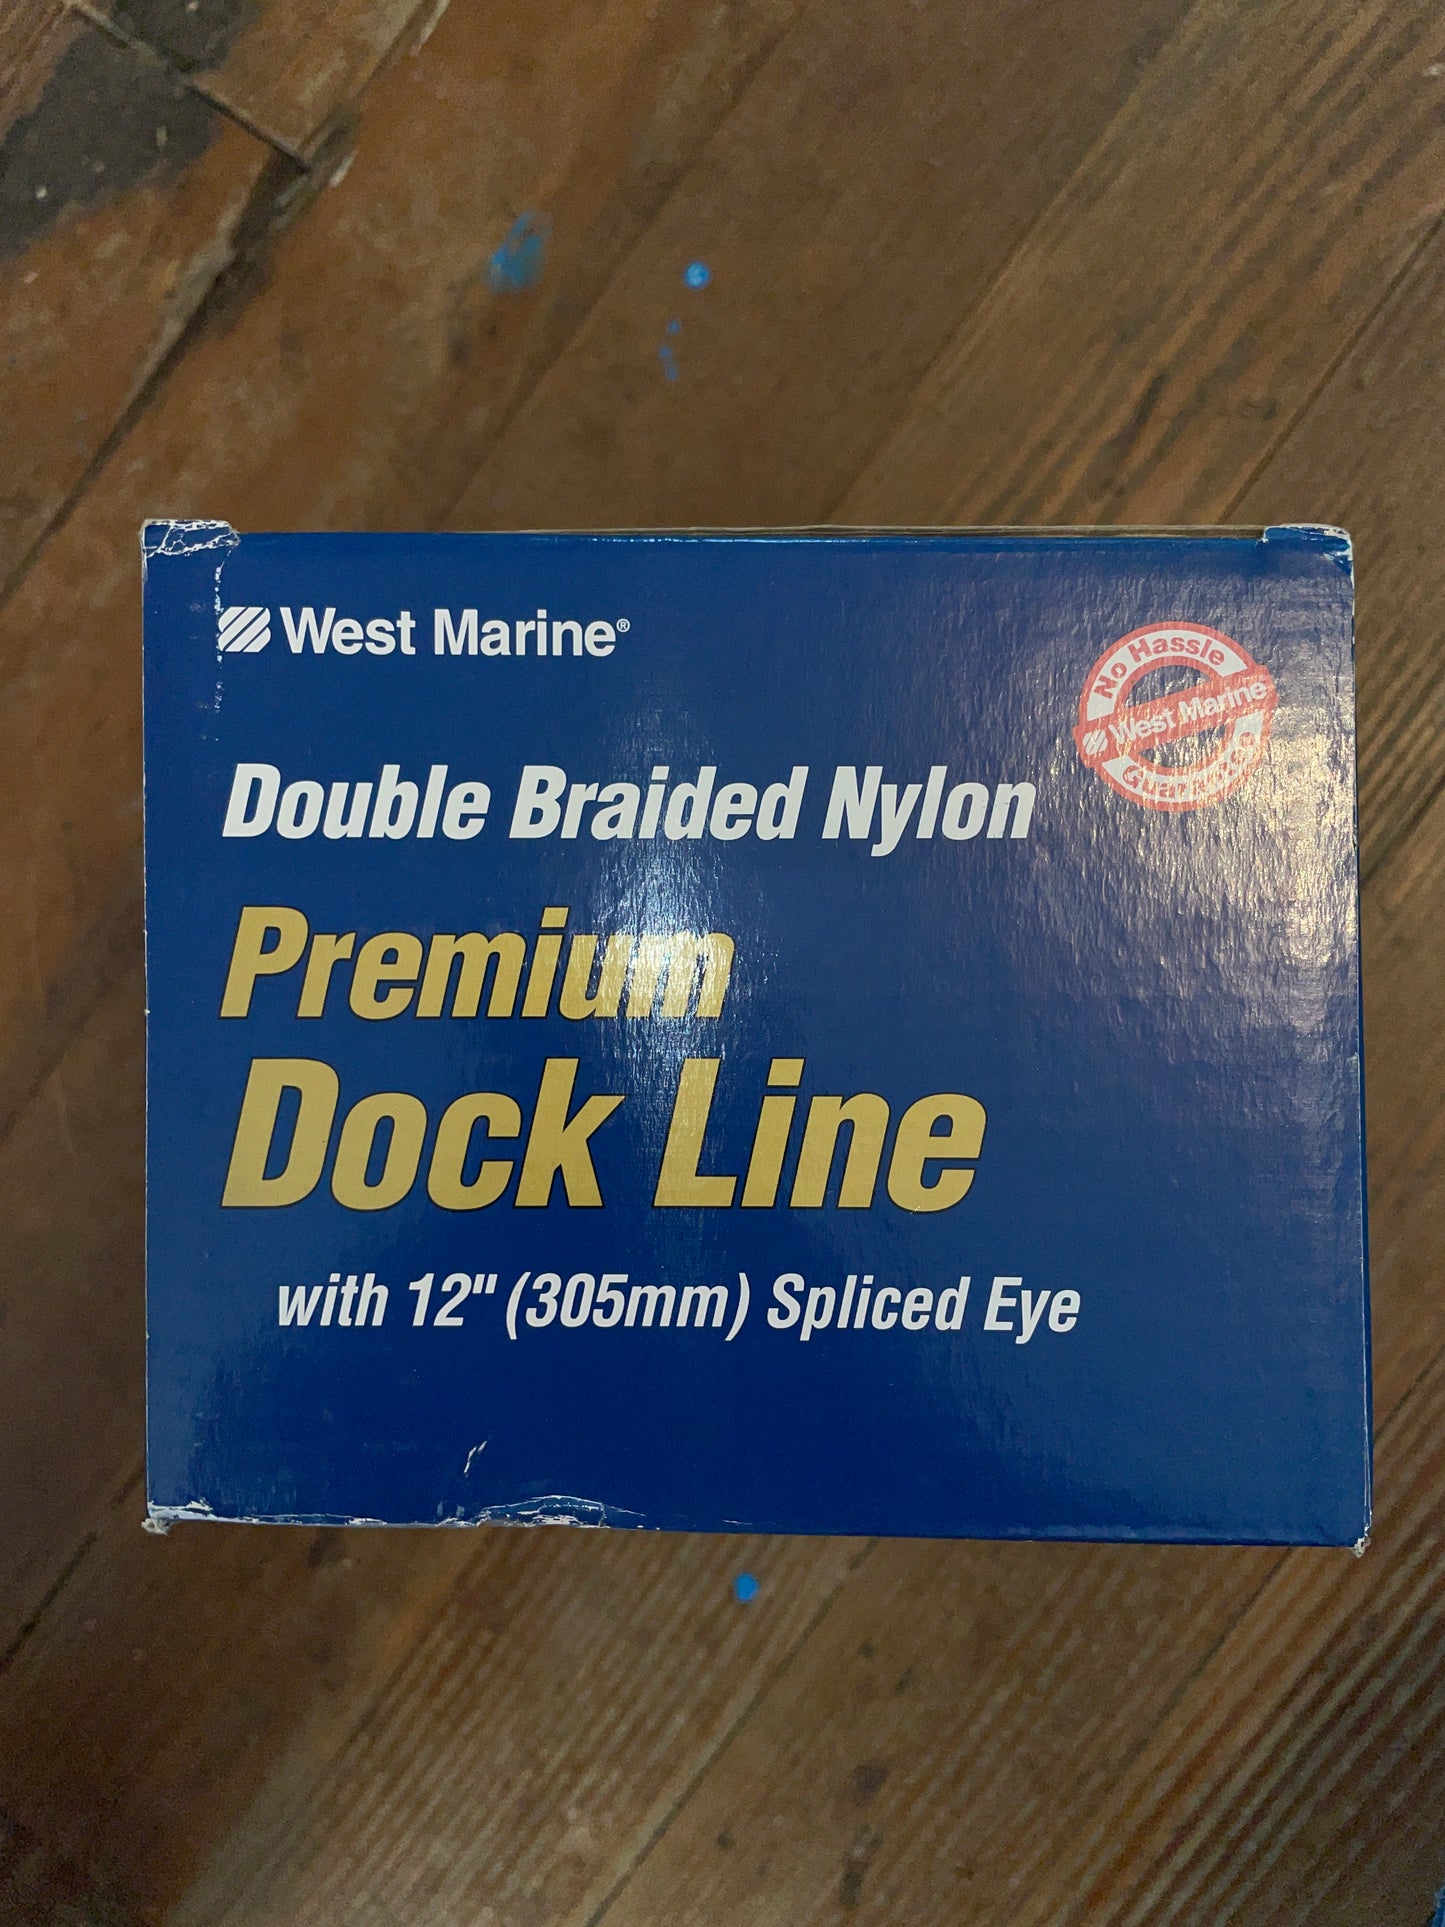 West Marine 1/2” x 25’ Double Braided Dock Line- NEW